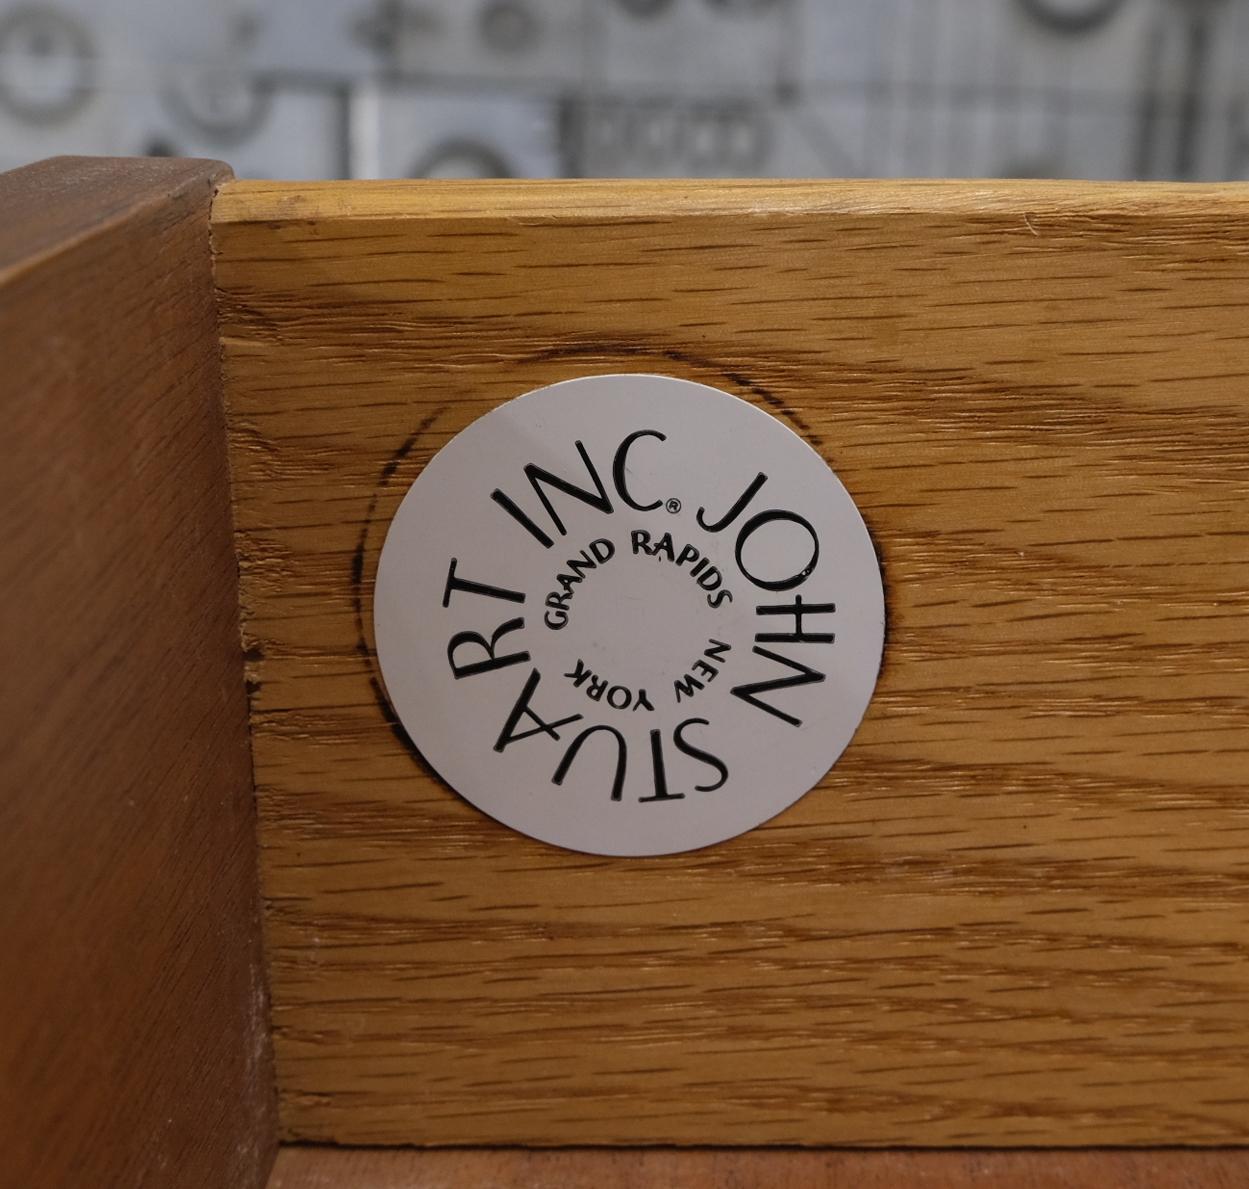 John Stuart Honey amber maple high chest 6 drawers dresser cabinet wooden pulls.
Dessin attribué à Paul Frankl, fabriqué par la société Jonson Furniture. Retraité par John Stuart. Construction des tiroirs en chêne massif. Très belle finition en